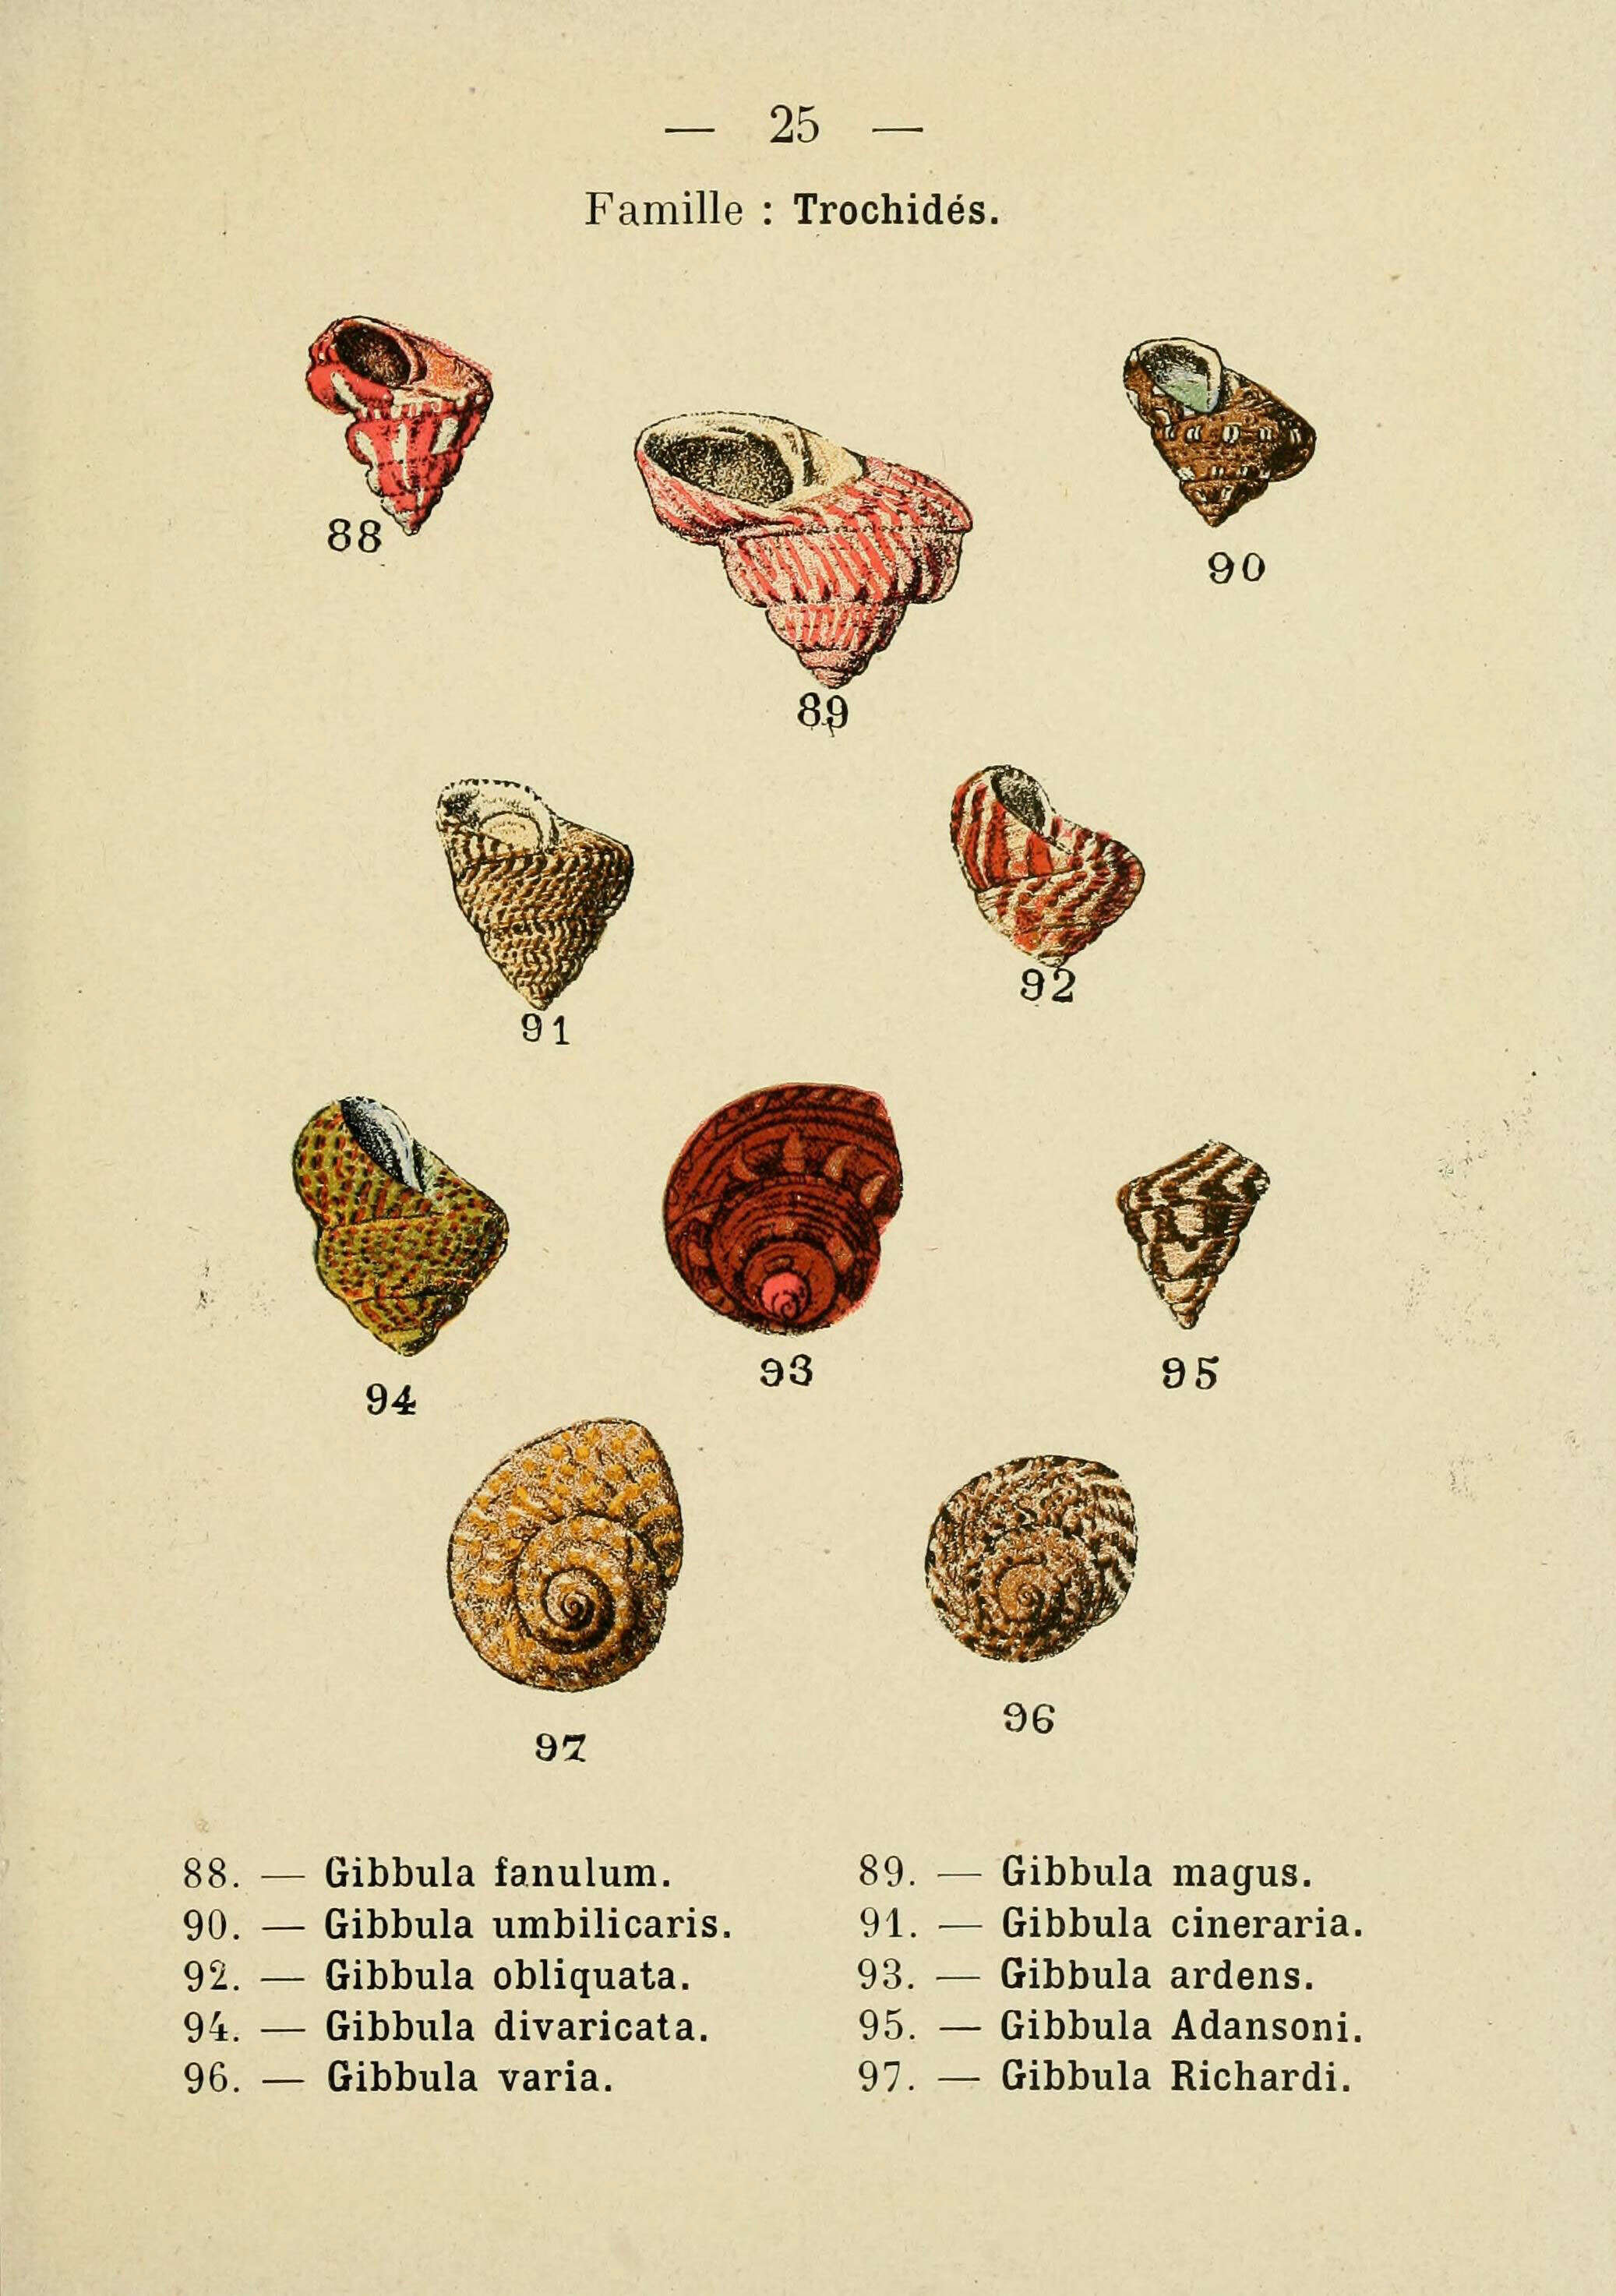 Sivun Gibbula fanulum (Gmelin 1791) kuva